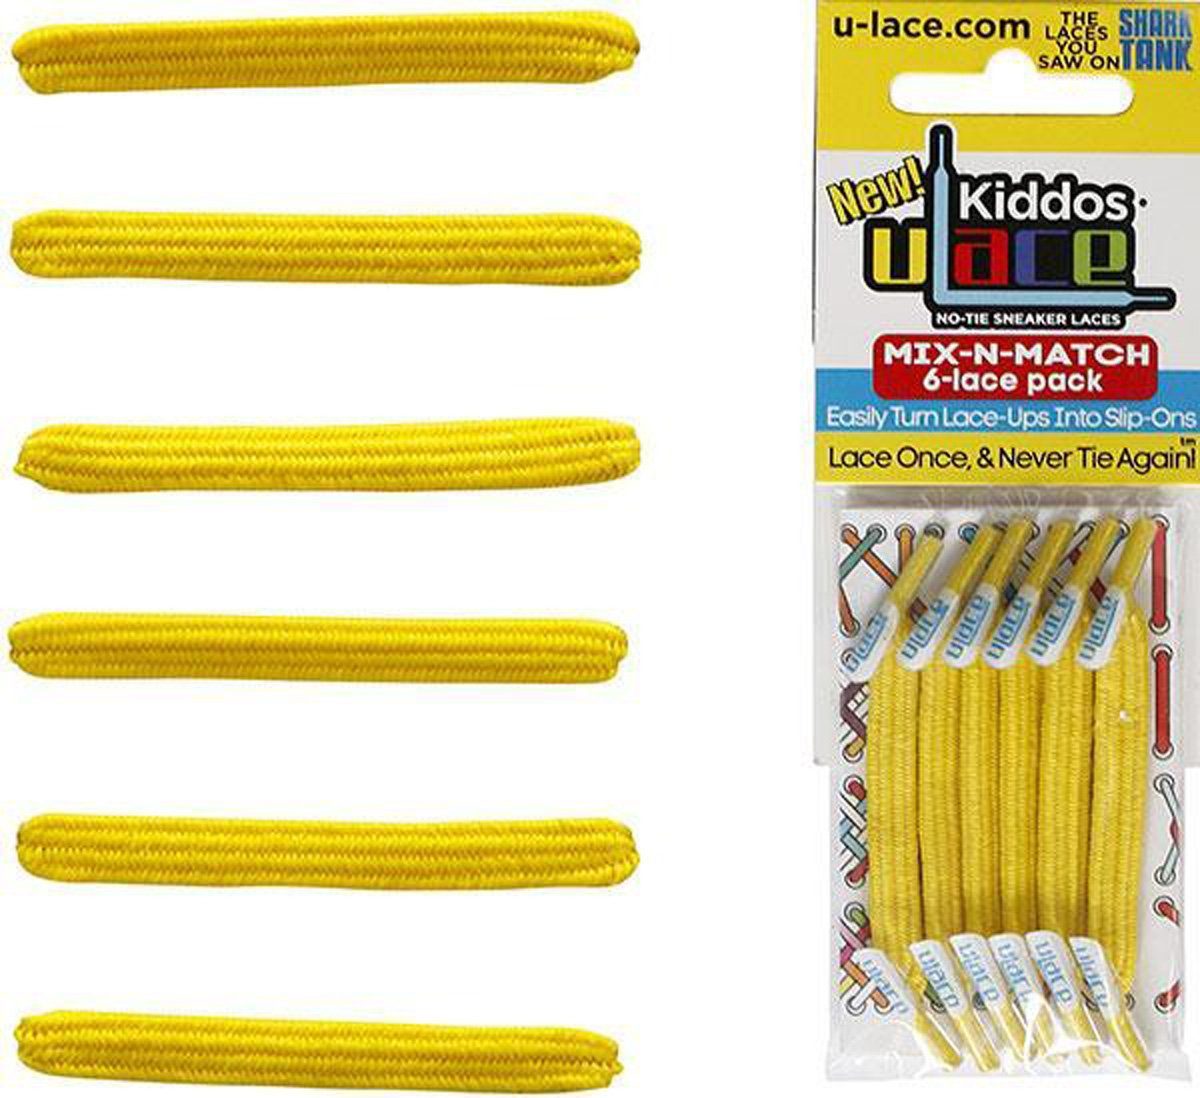 U-Laces Schnürsenkel Kiddos - elastische Schnürsenkel mit Wiederhaken für Kinder Yellow